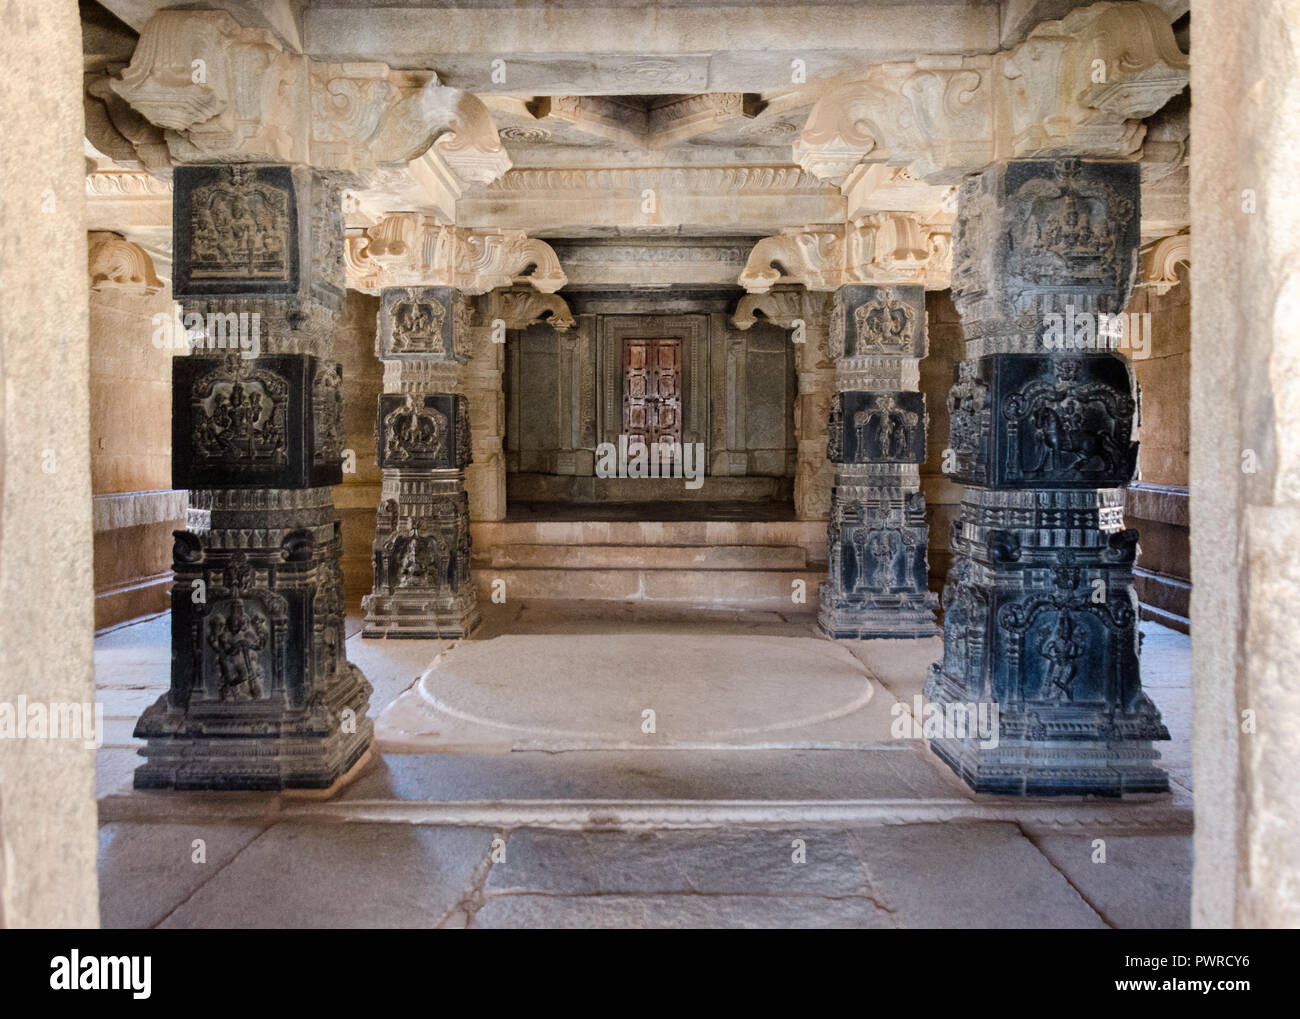 Quatre piliers finement sculptés dans le style Hoysala à l'intérieur du mandapa principal du temple de Rama Hazara, Hampi, Karnataka, Inde Banque D'Images